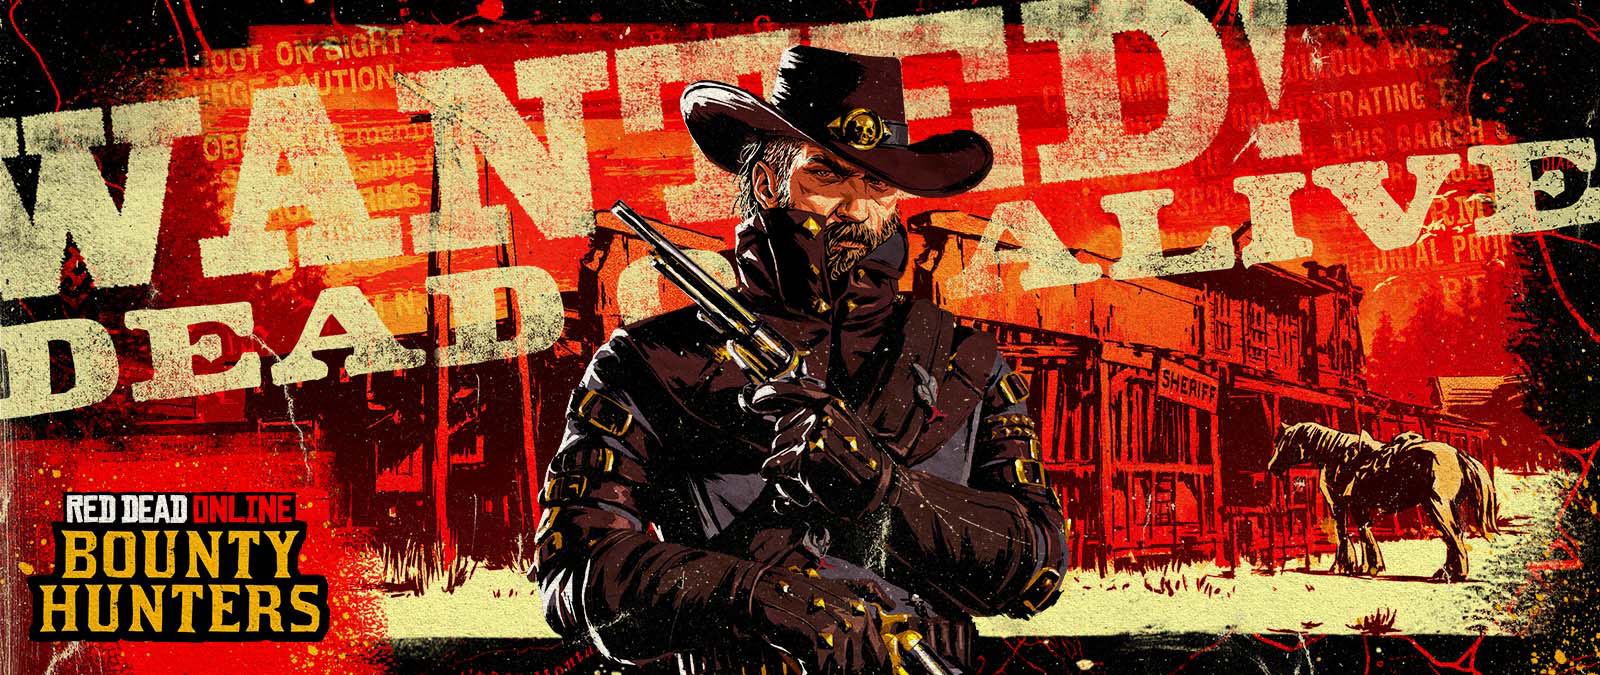 Red Dead Online: cazadores de recompensas. ¡Buscado! Vivo o muerto. Vaquero sosteniendo dos revólveres frente a un antiguo edificio del sheriff